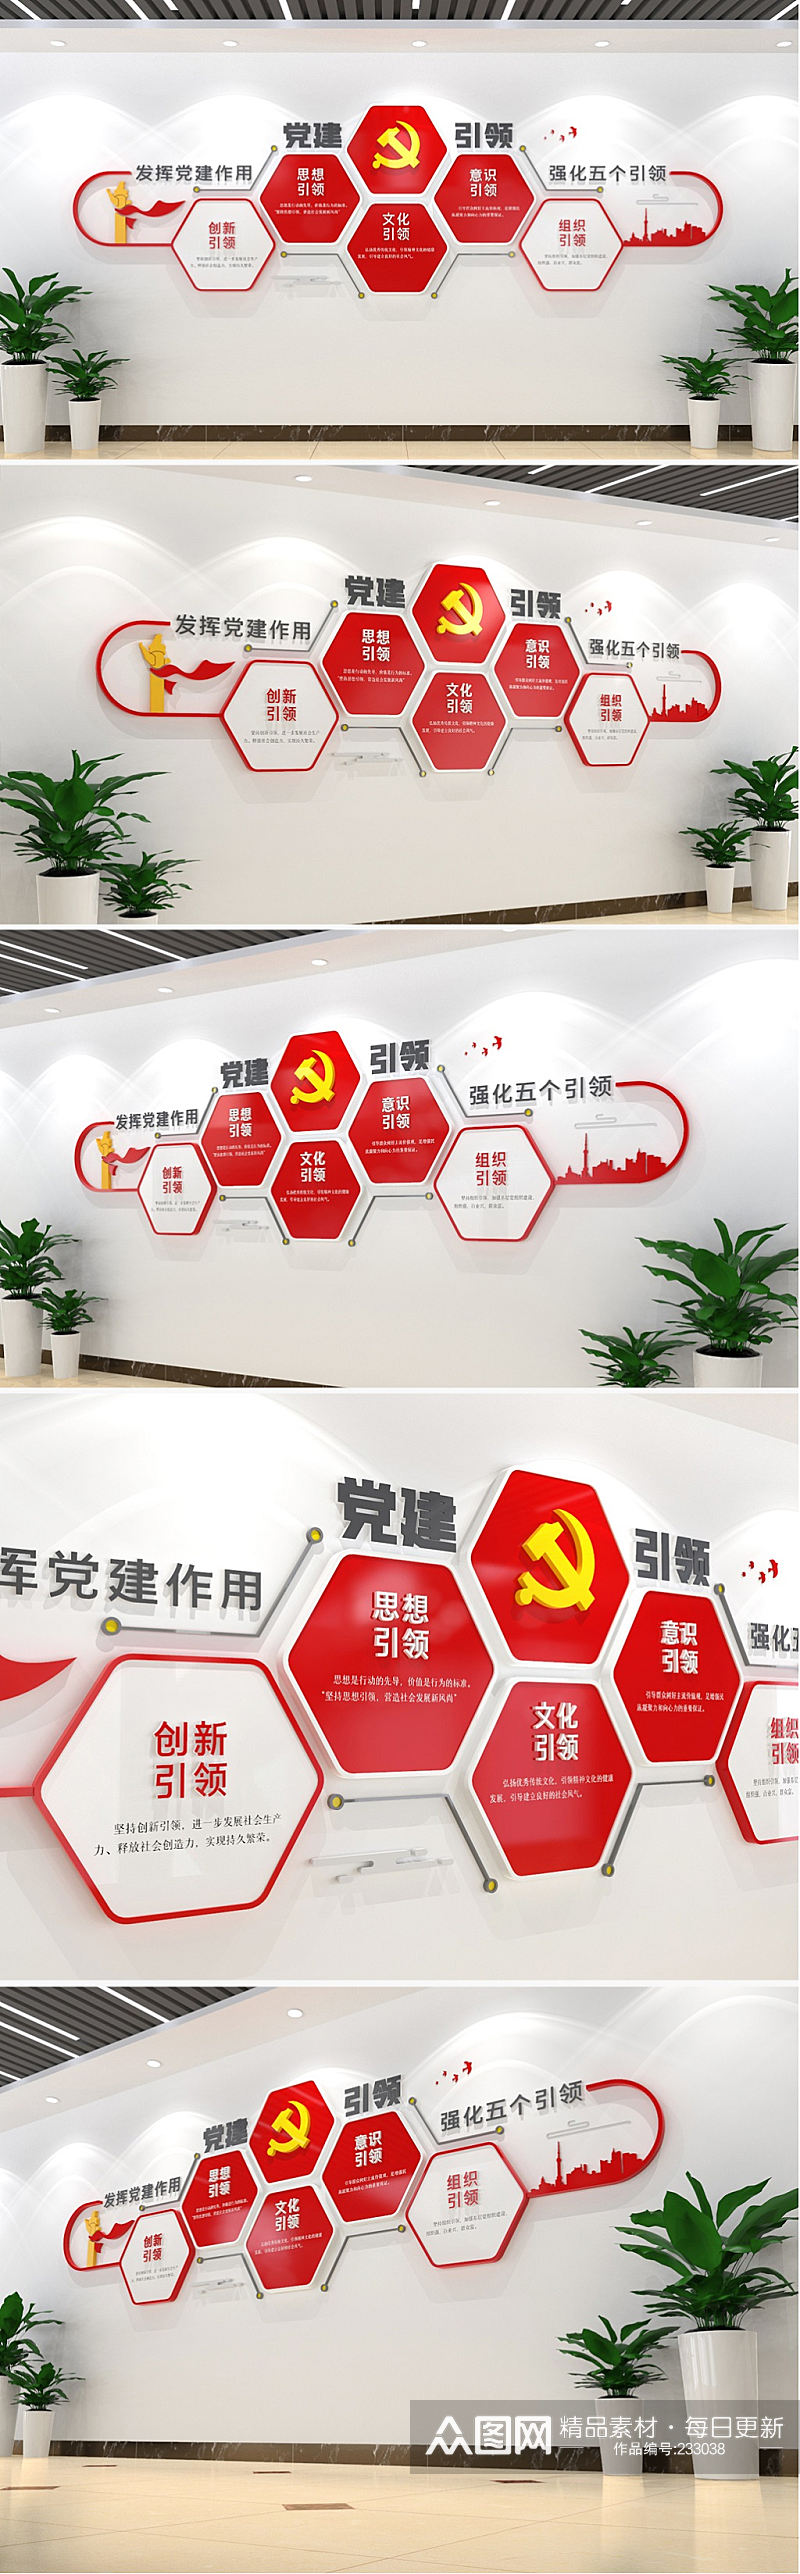 活动室中心党员初心墙承诺文化墙设计素材